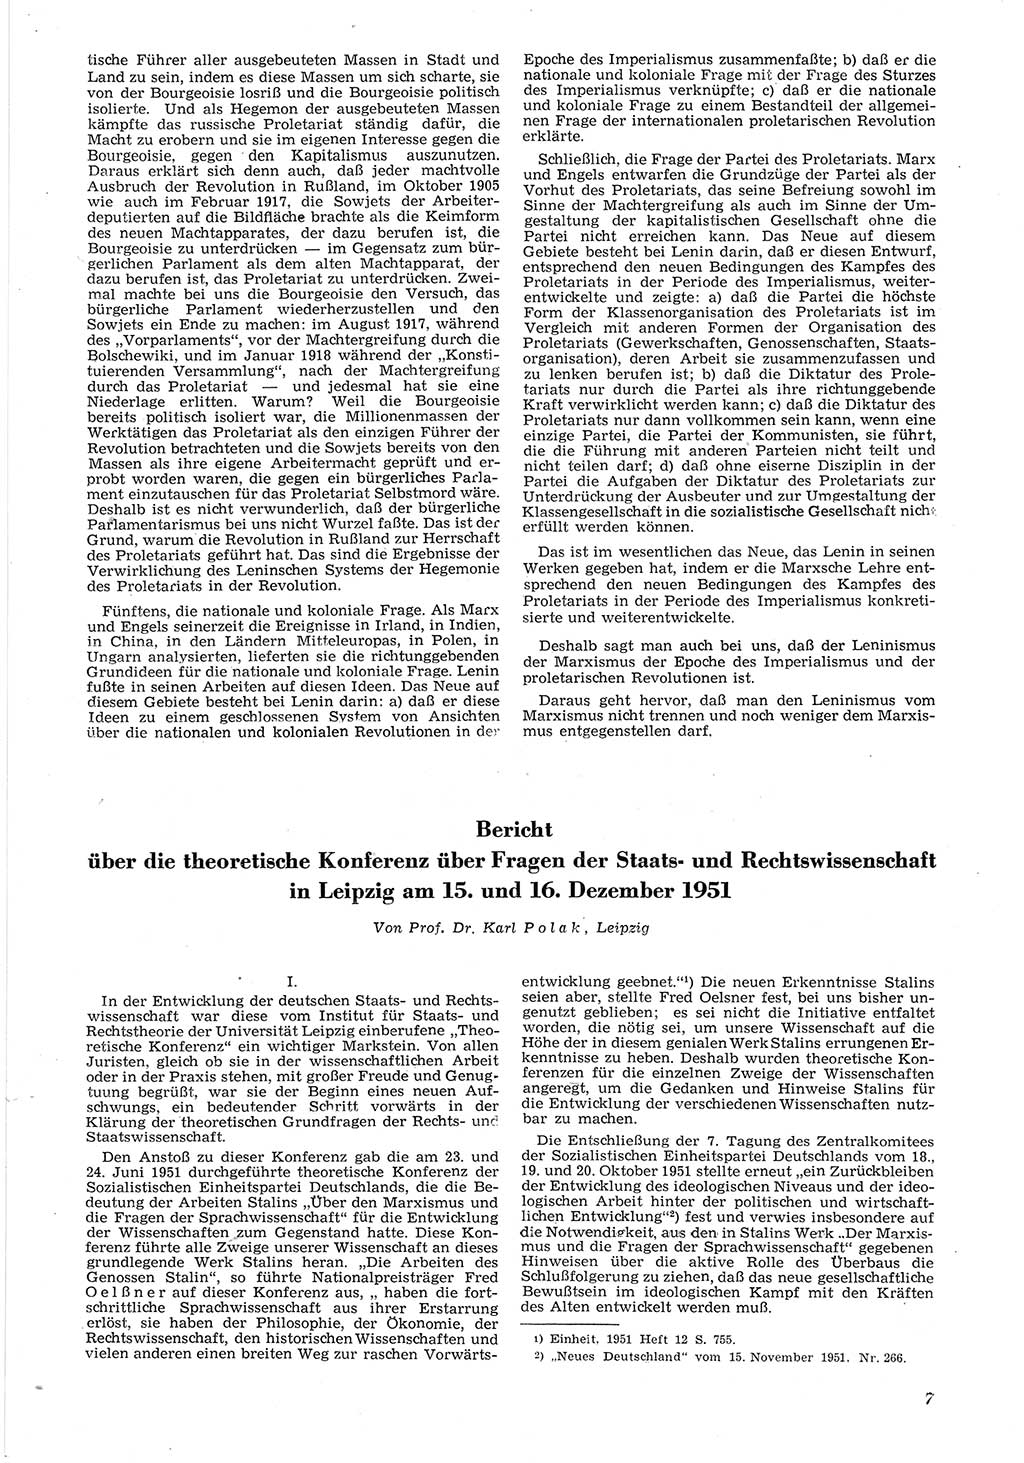 Neue Justiz (NJ), Zeitschrift für Recht und Rechtswissenschaft [Deutsche Demokratische Republik (DDR)], 6. Jahrgang 1952, Seite 7 (NJ DDR 1952, S. 7)